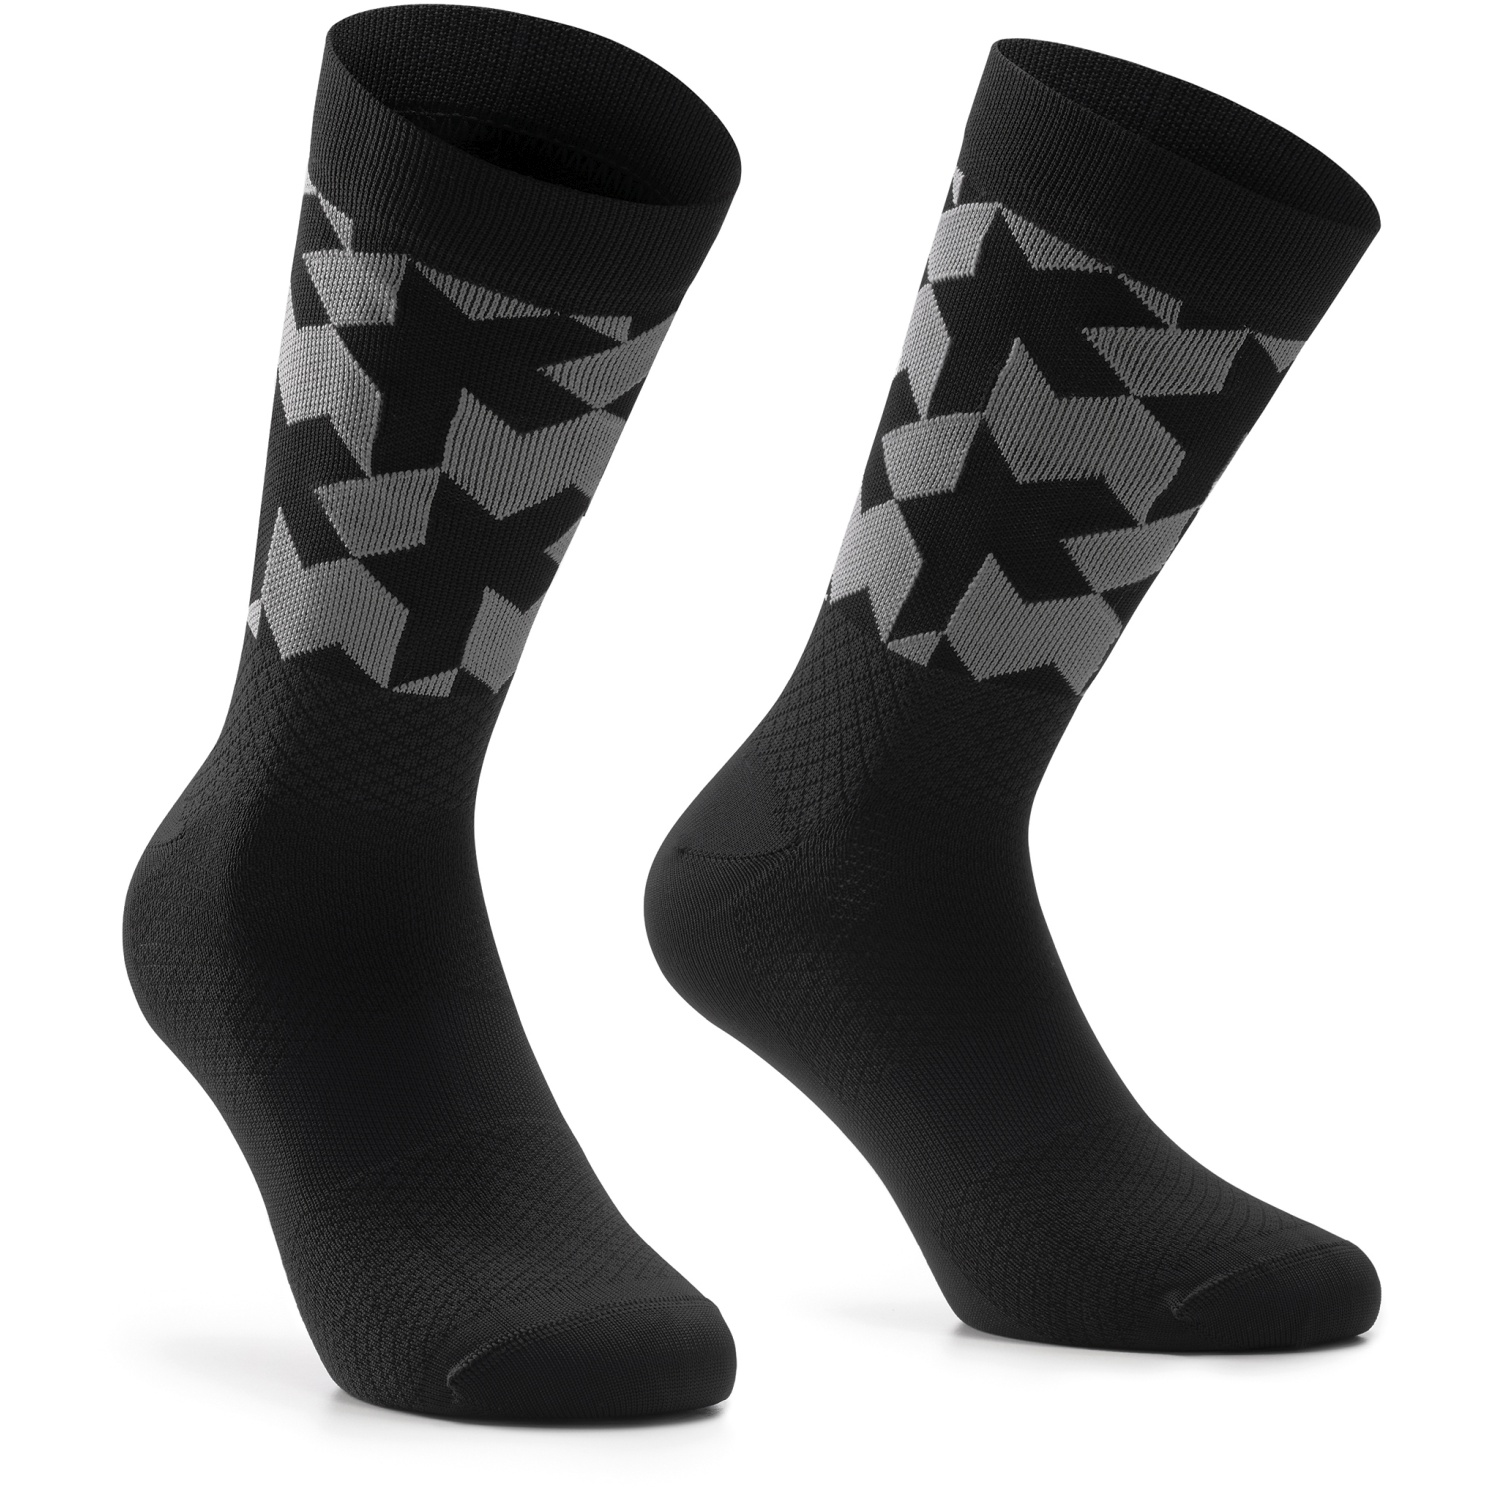 Носки ASSOS Monogram Socks Evo, мужские, черно-серые, I/39-42